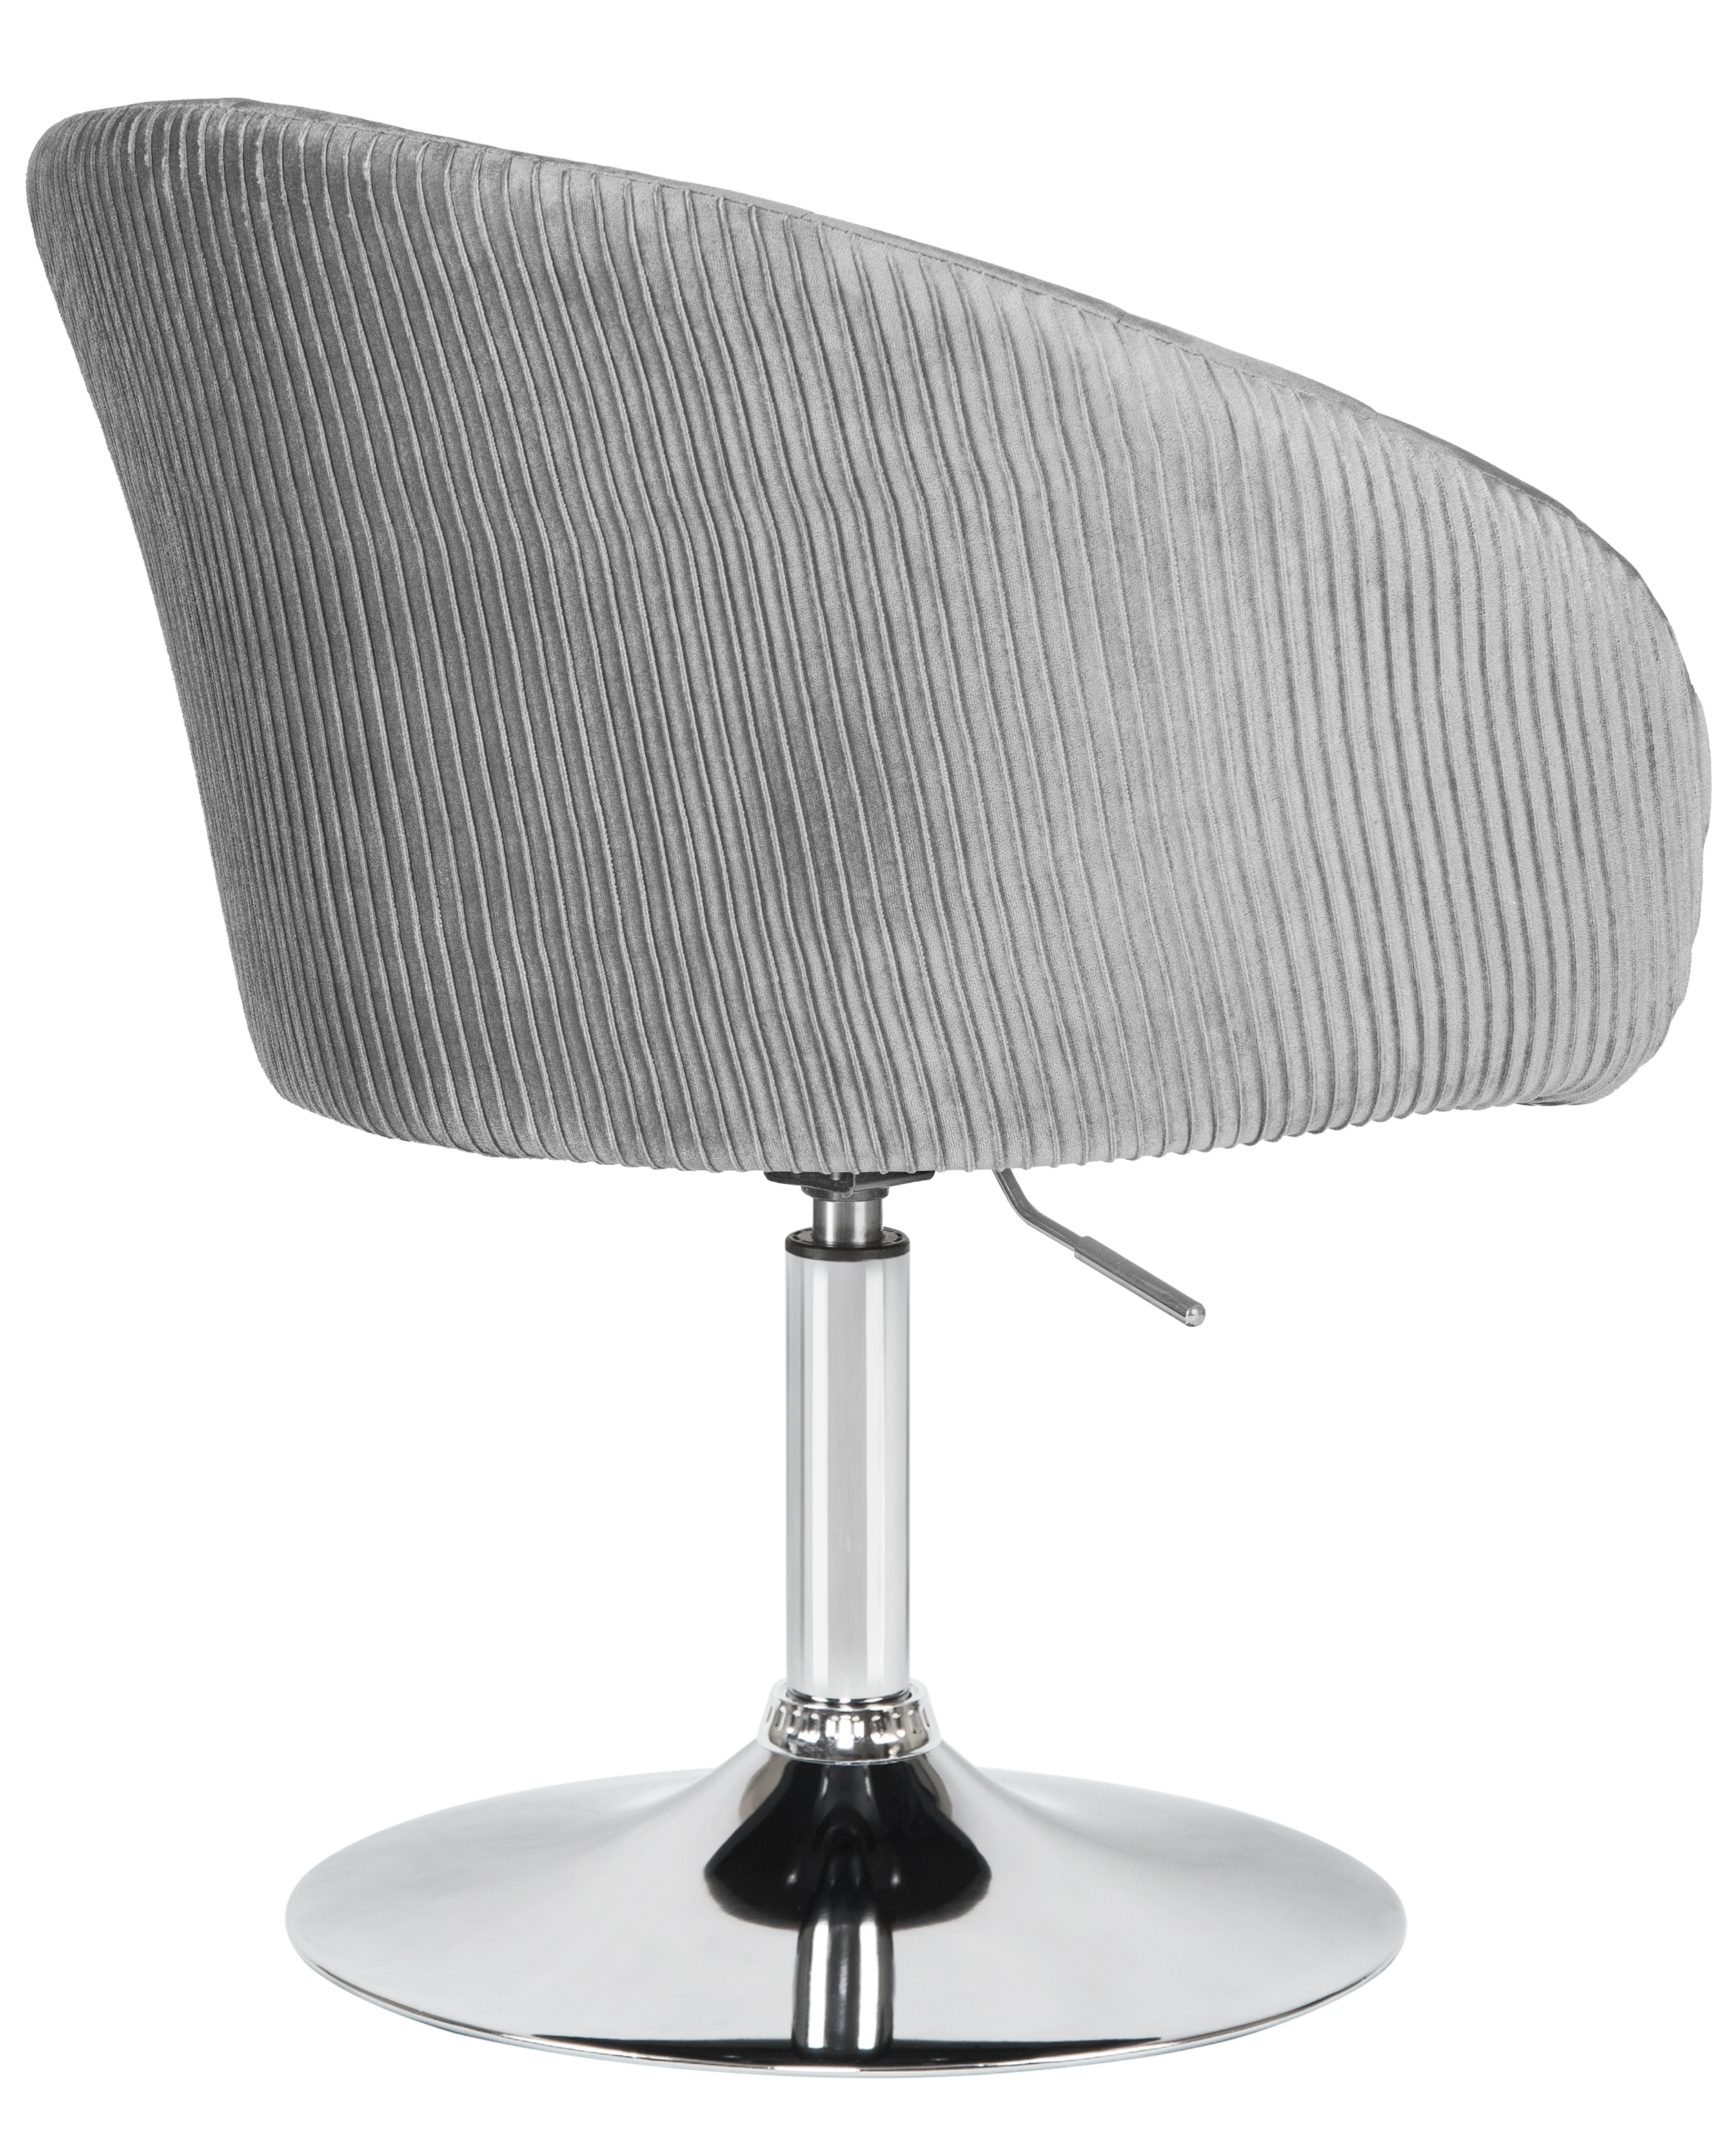 Кресло дизайнерское DOBRIN EDISON серый велюр 1922-19